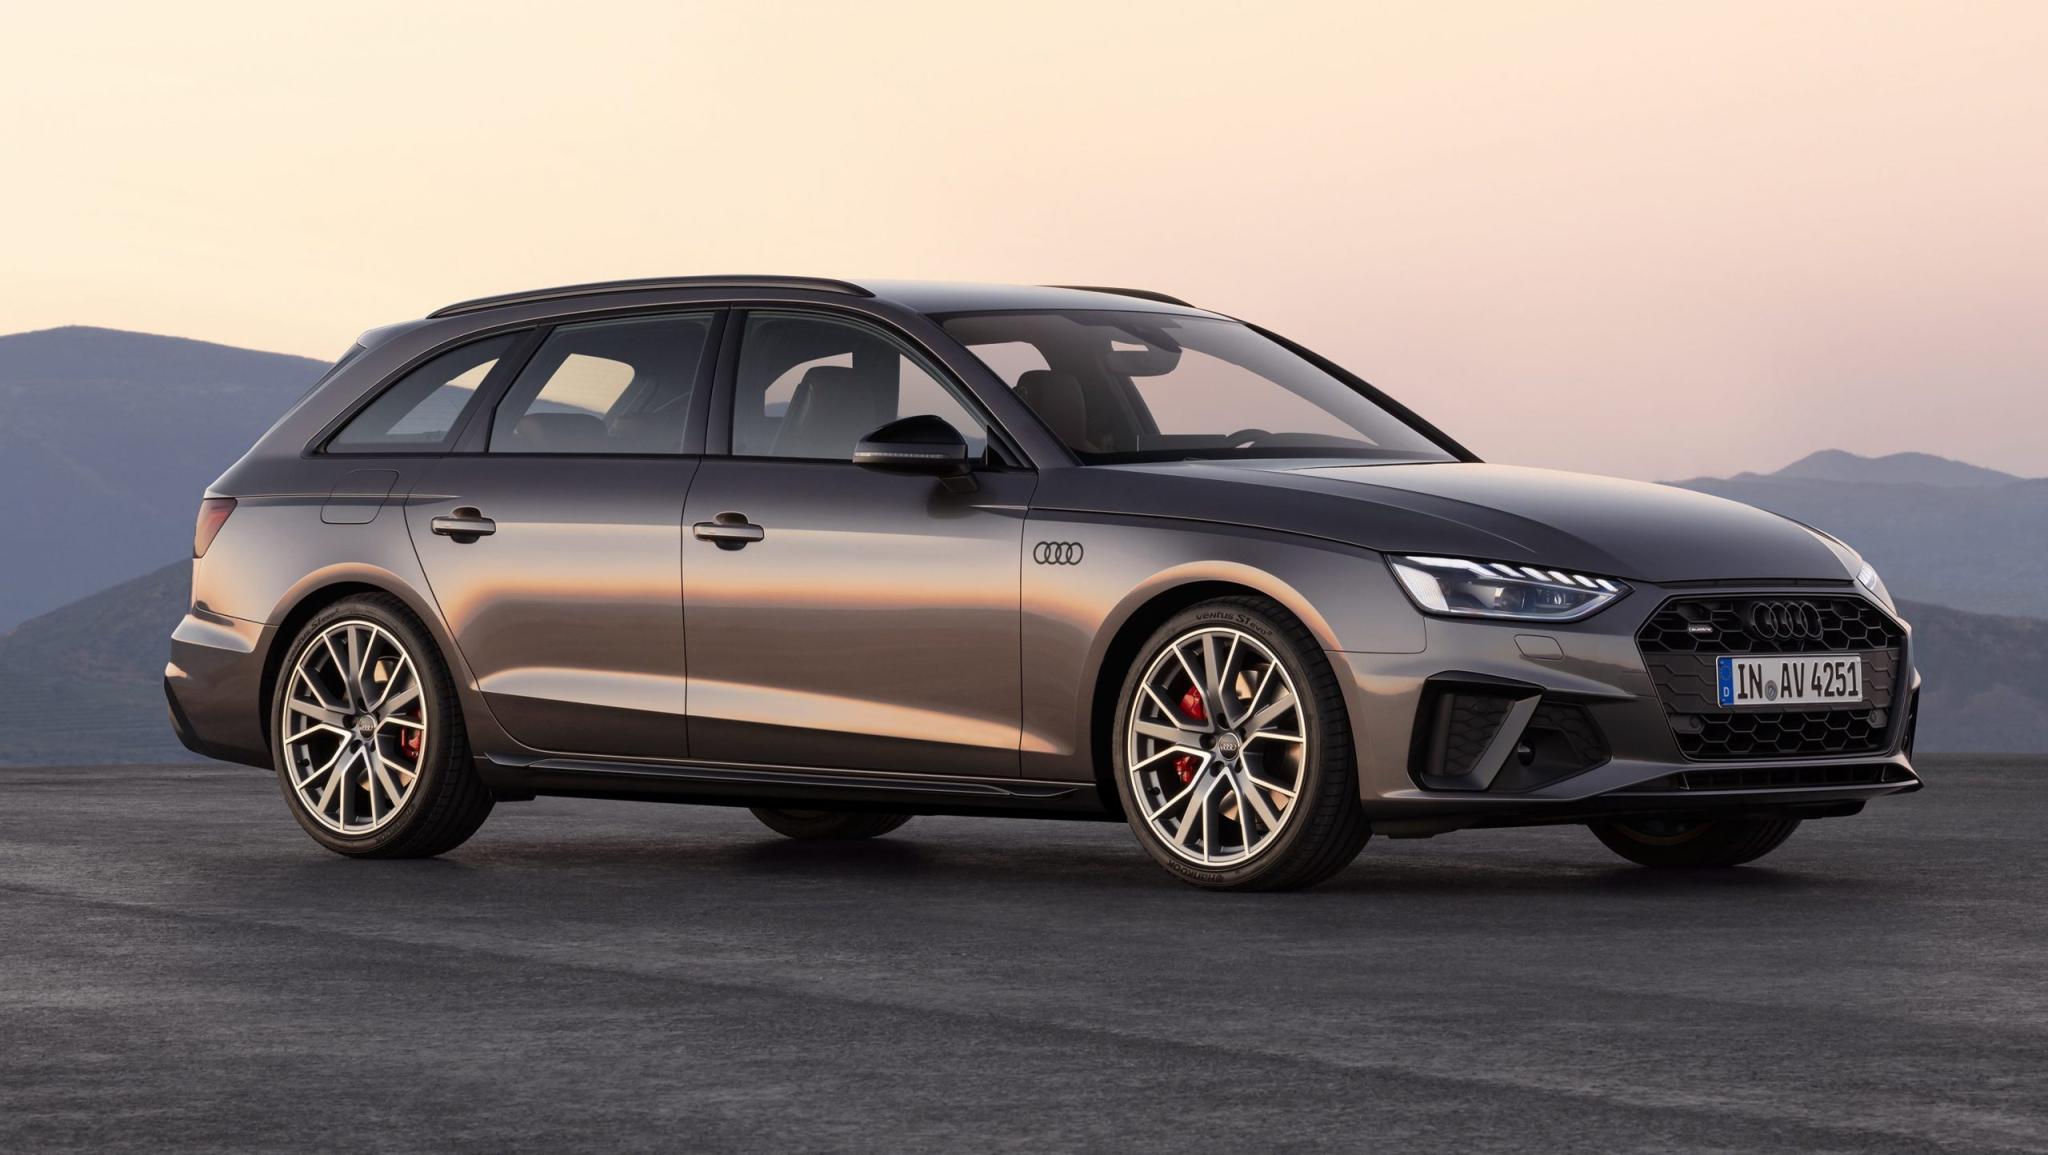 Audi A4 Avant facelift 2019 Terra gray